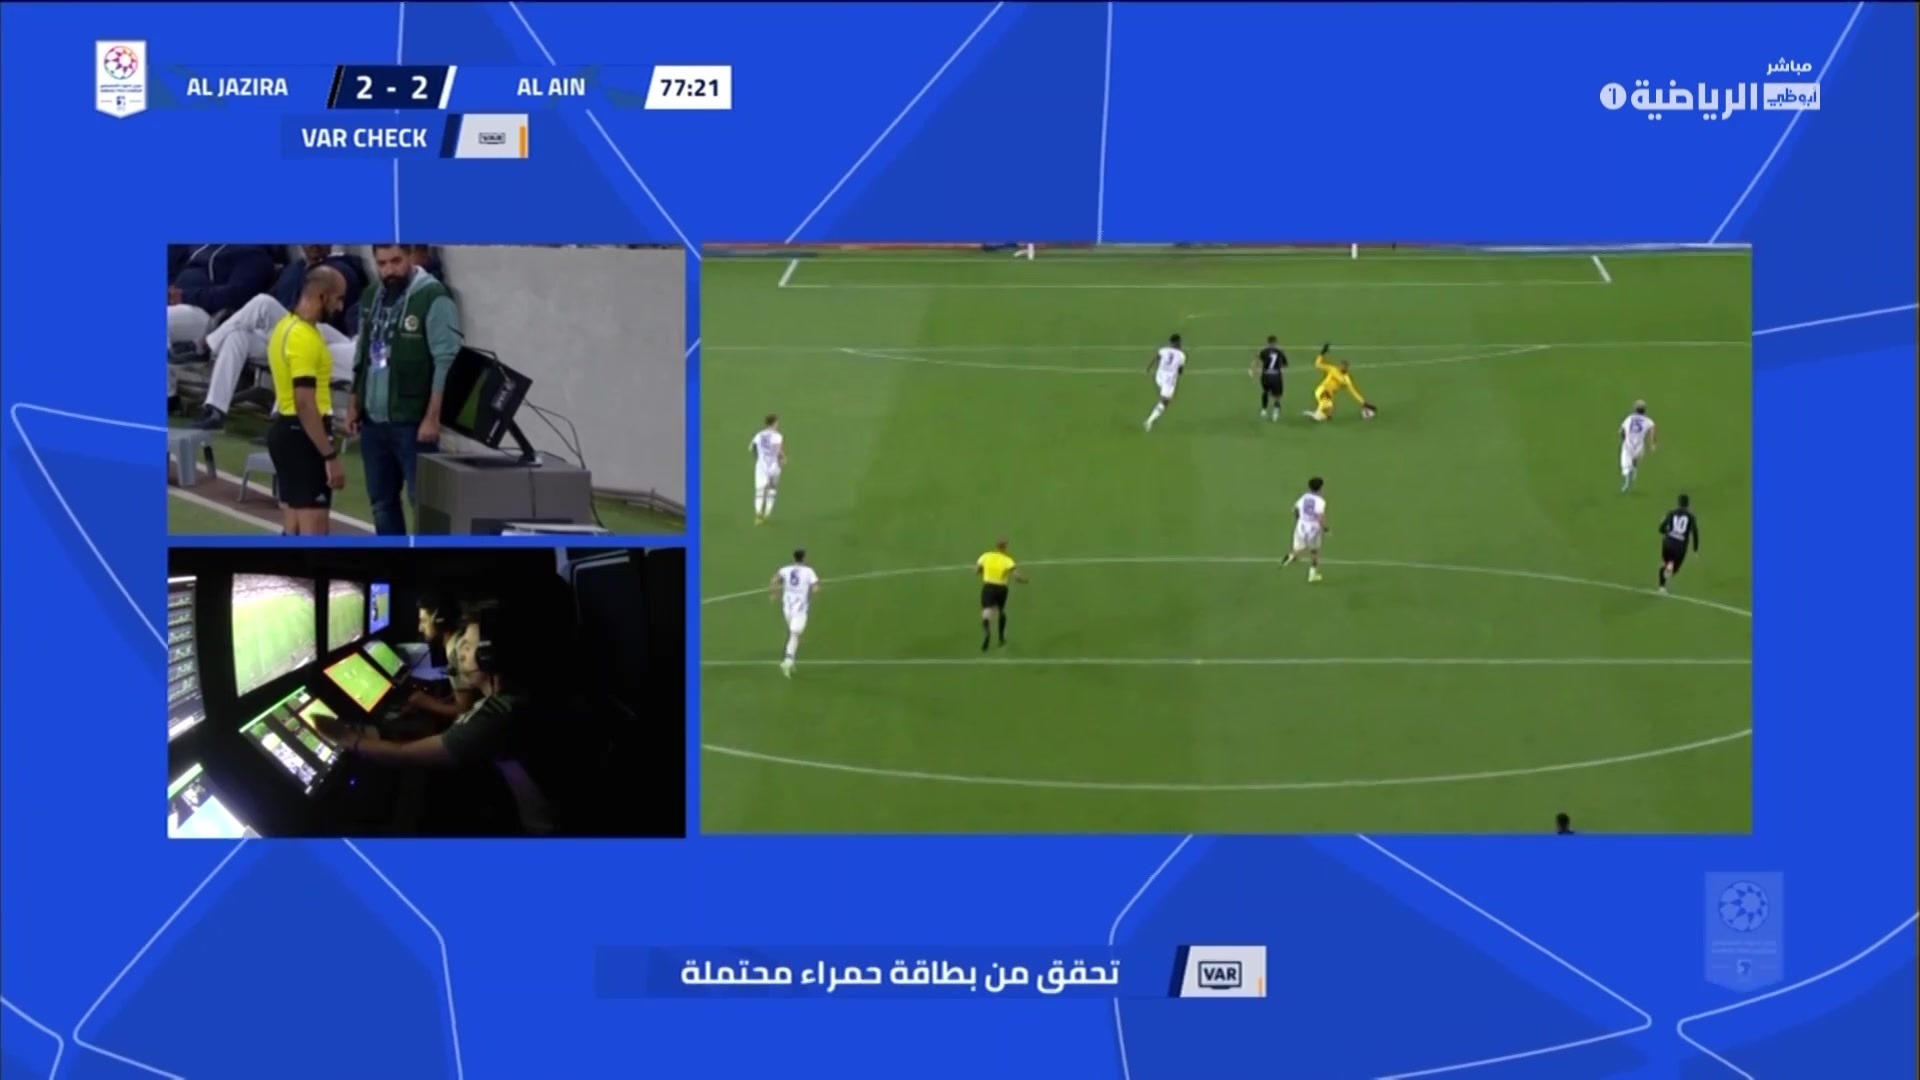 قناة أبوظبي الرياضية on X